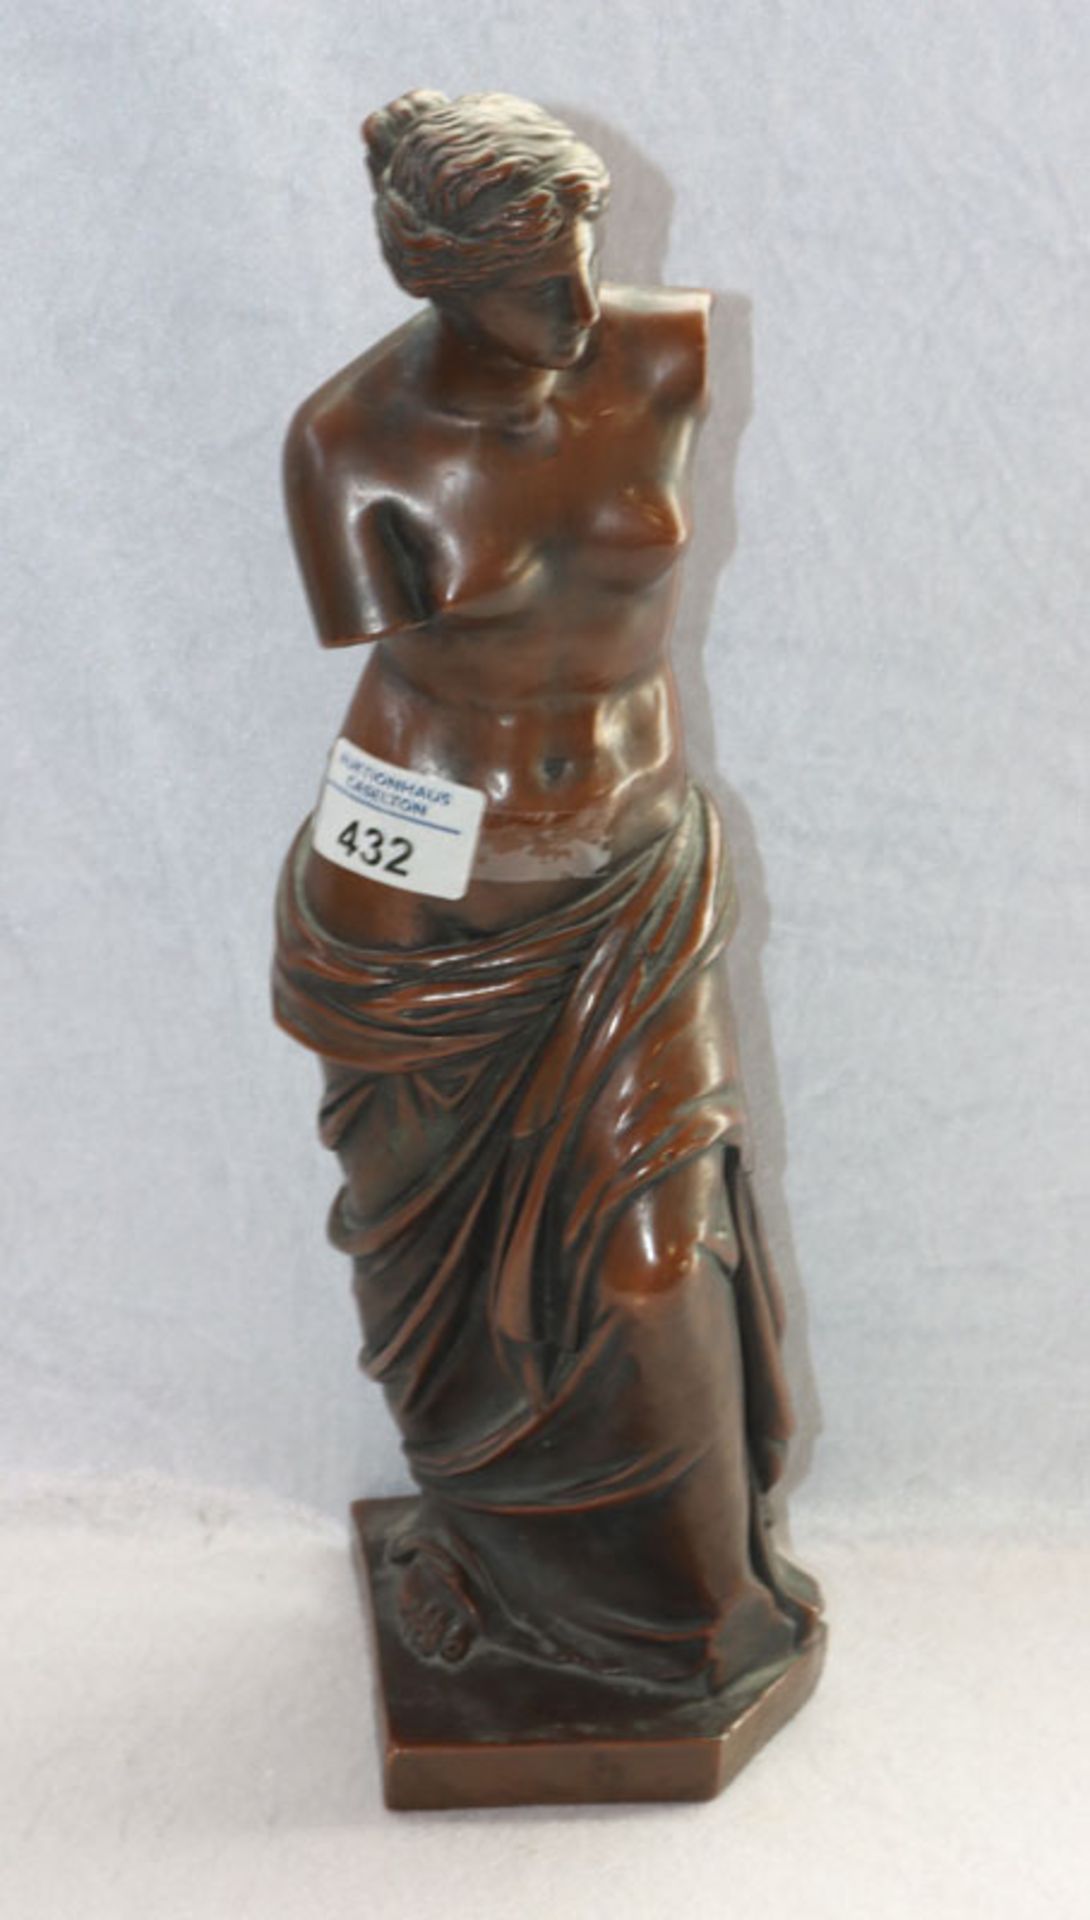 Metallguß Figurenskulptur 'Frauendarstellung', H 38 cm, B 13 cm, T 12 cm